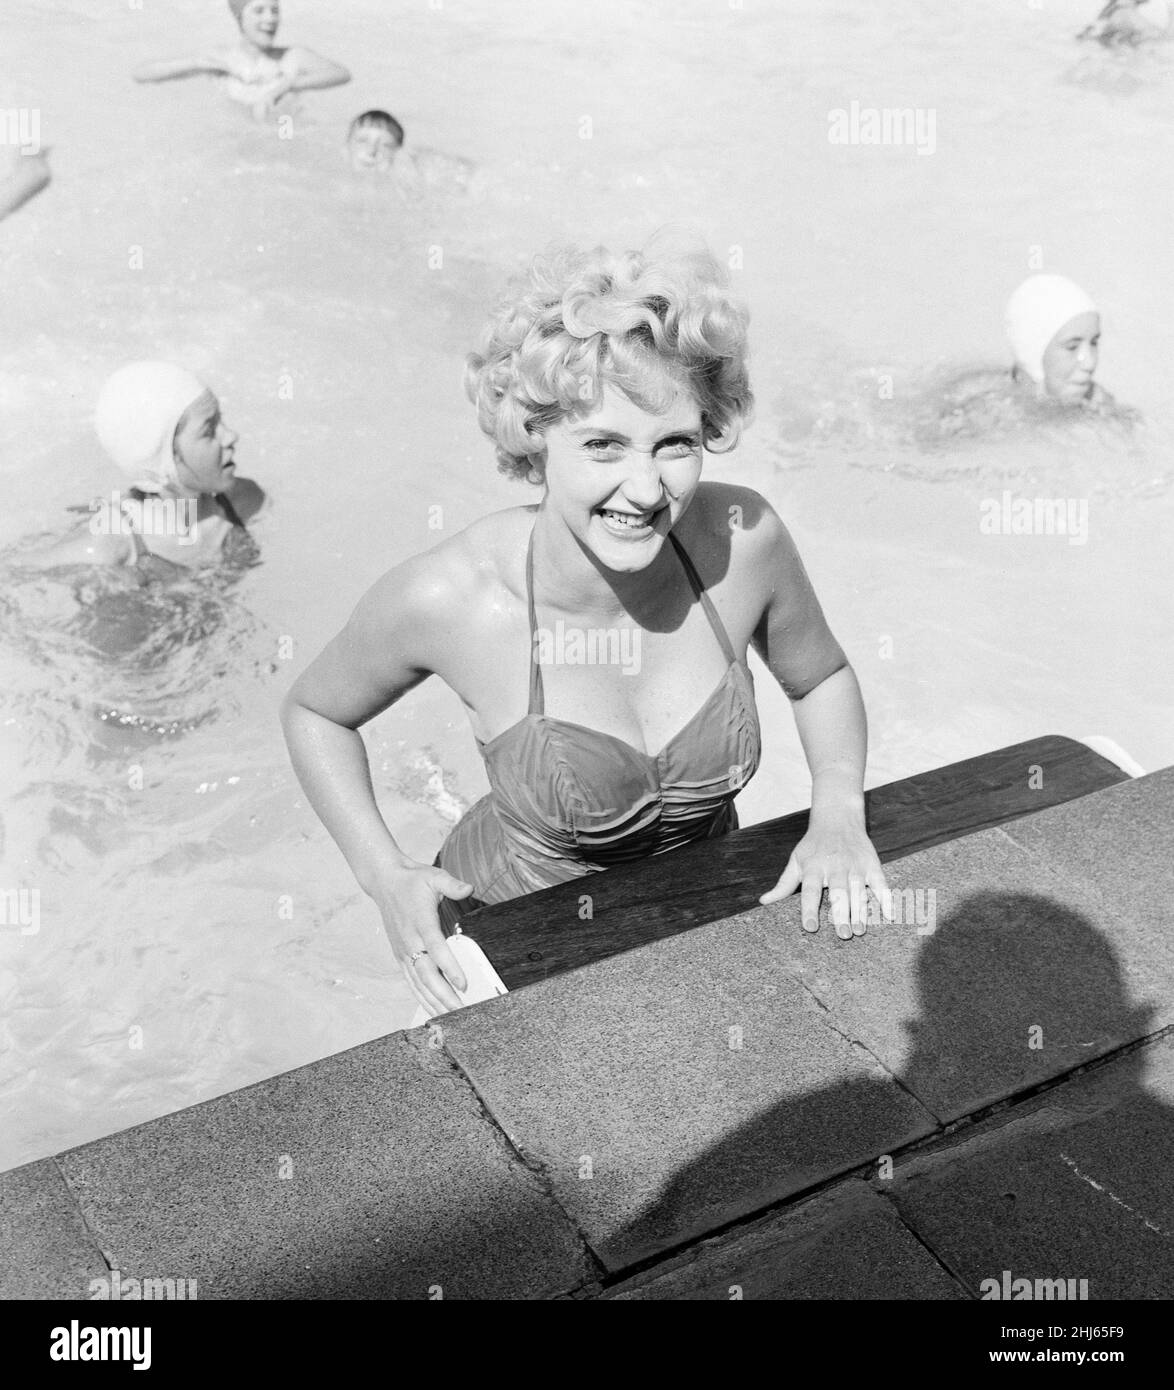 Liz Fraser, englische Schauspielerin, abgebildet in den Durnsford Road Baths, Bounds Green, London Borough of Haringey, North London, Donnerstag, 20th. August 1959. Stockfoto